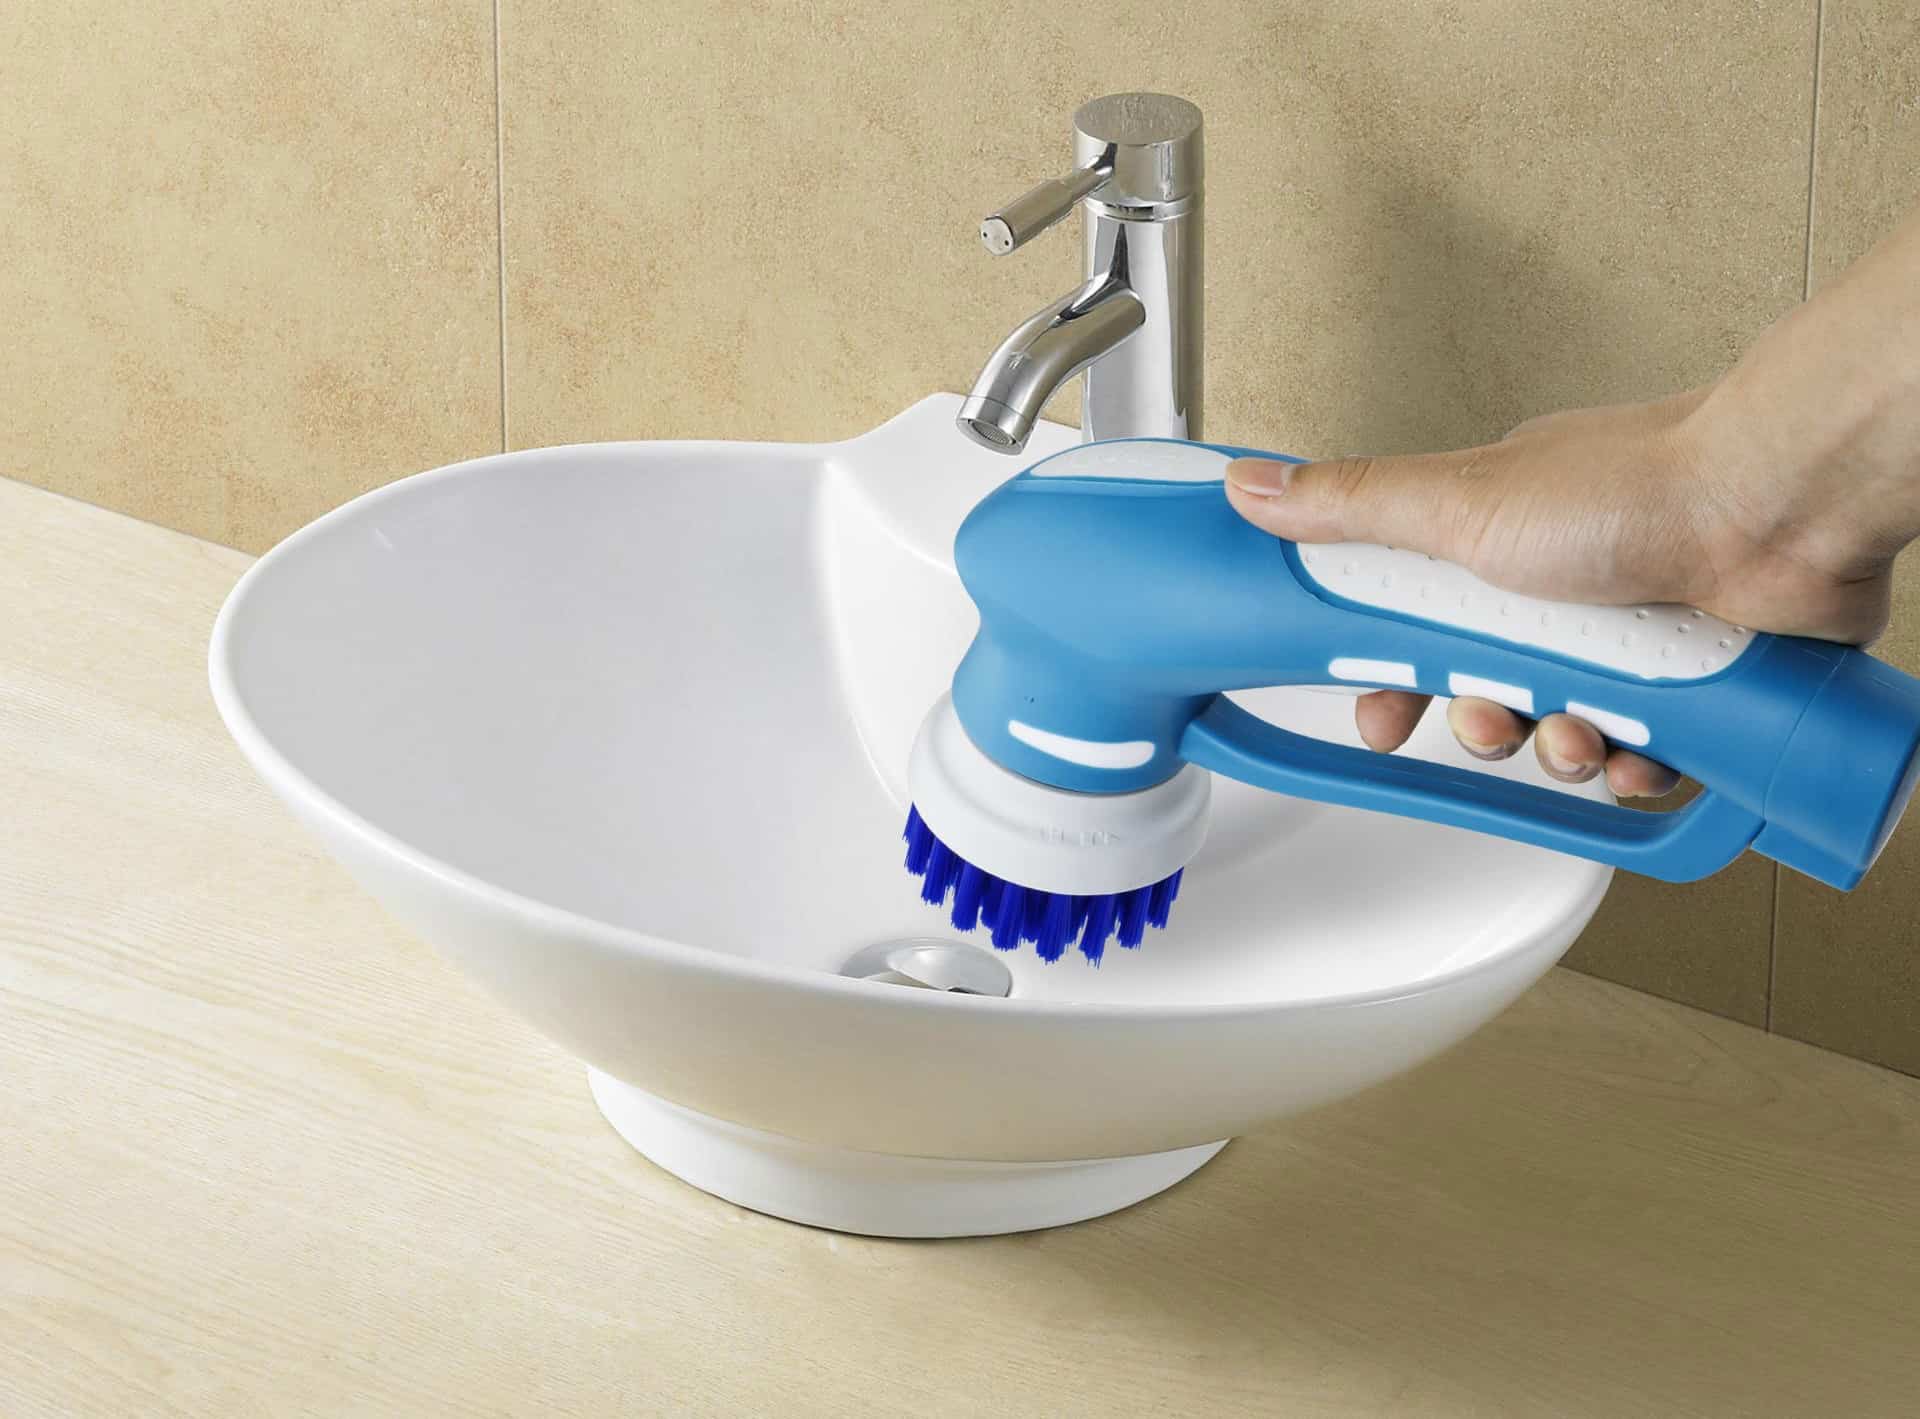 6 Best Bathroom Power Scrubbers in 2023